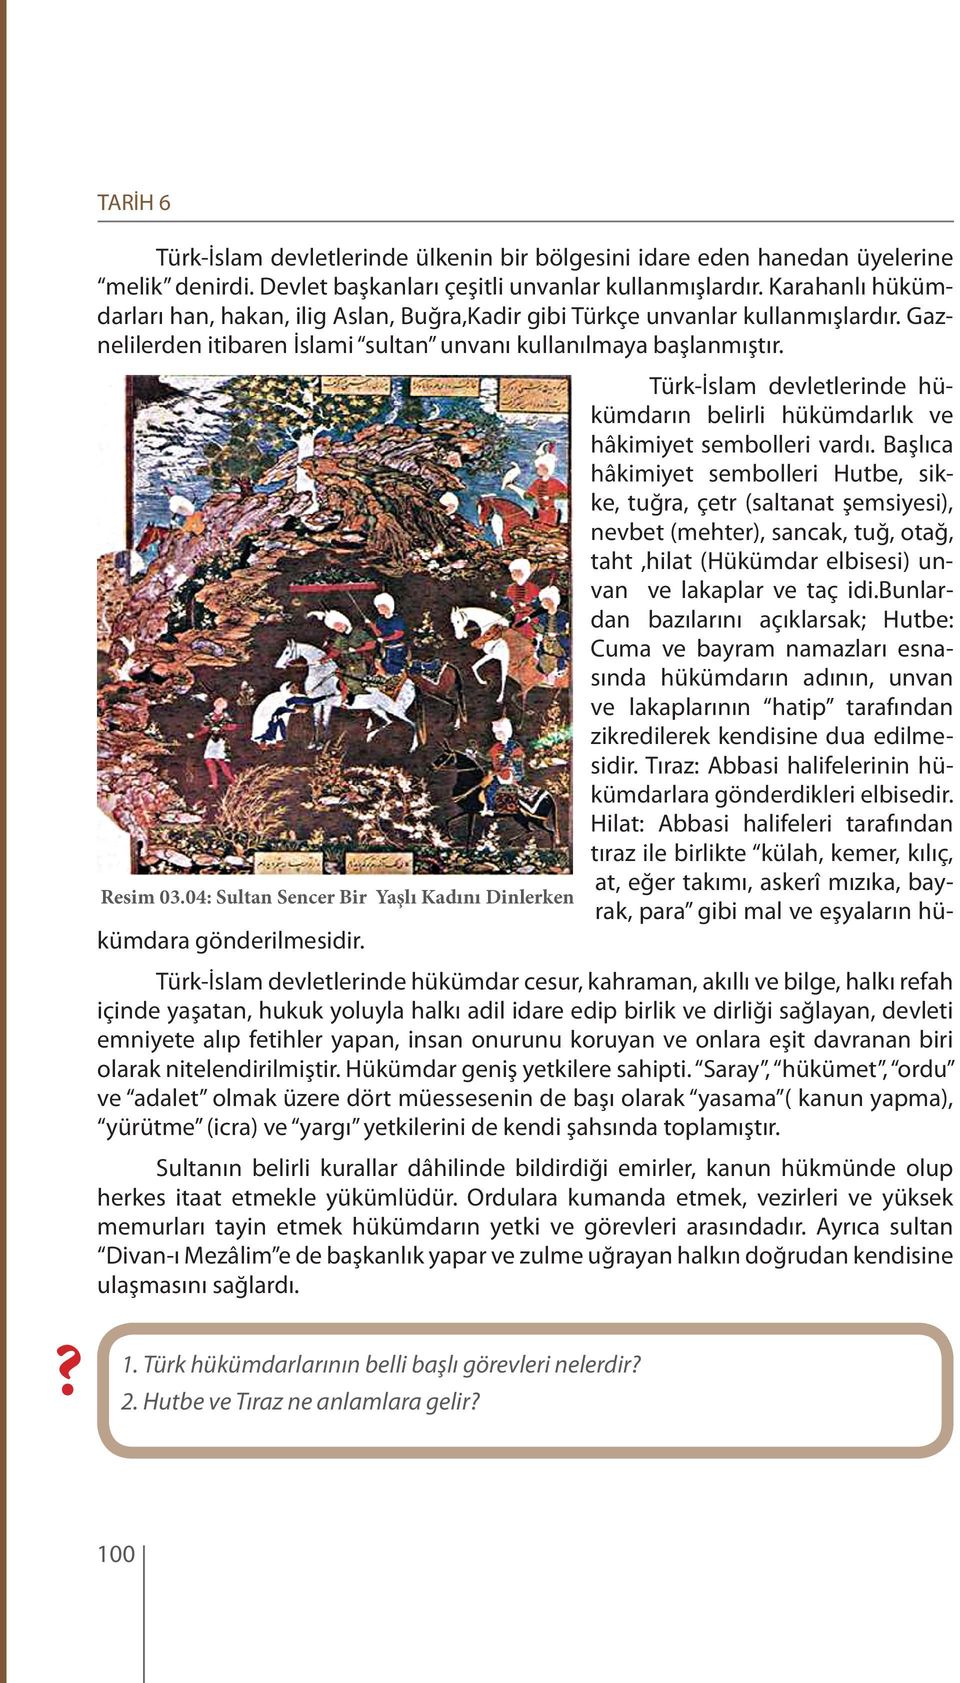 04: Sultan Sencer Bir Yaşlı Kadını Dinlerken Türk-İslam devletlerinde hükümdarın belirli hükümdarlık ve hâkimiyet sembolleri vardı.